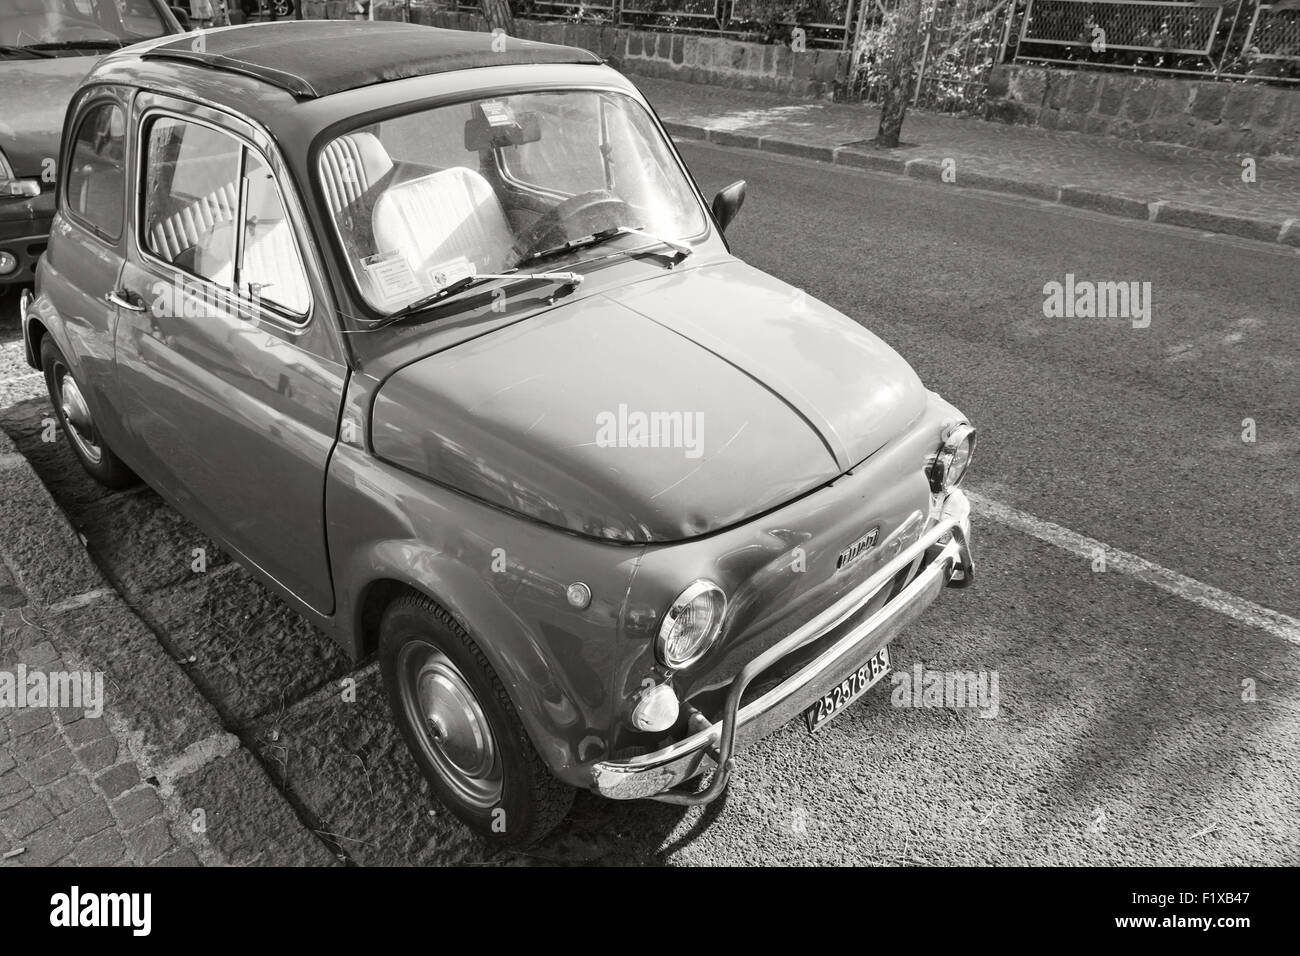 Ischia, Italia - 15 de agosto de 2015: Fiat 500 coches en la ciudad vieja está estacionada en carretera urbana Foto de stock